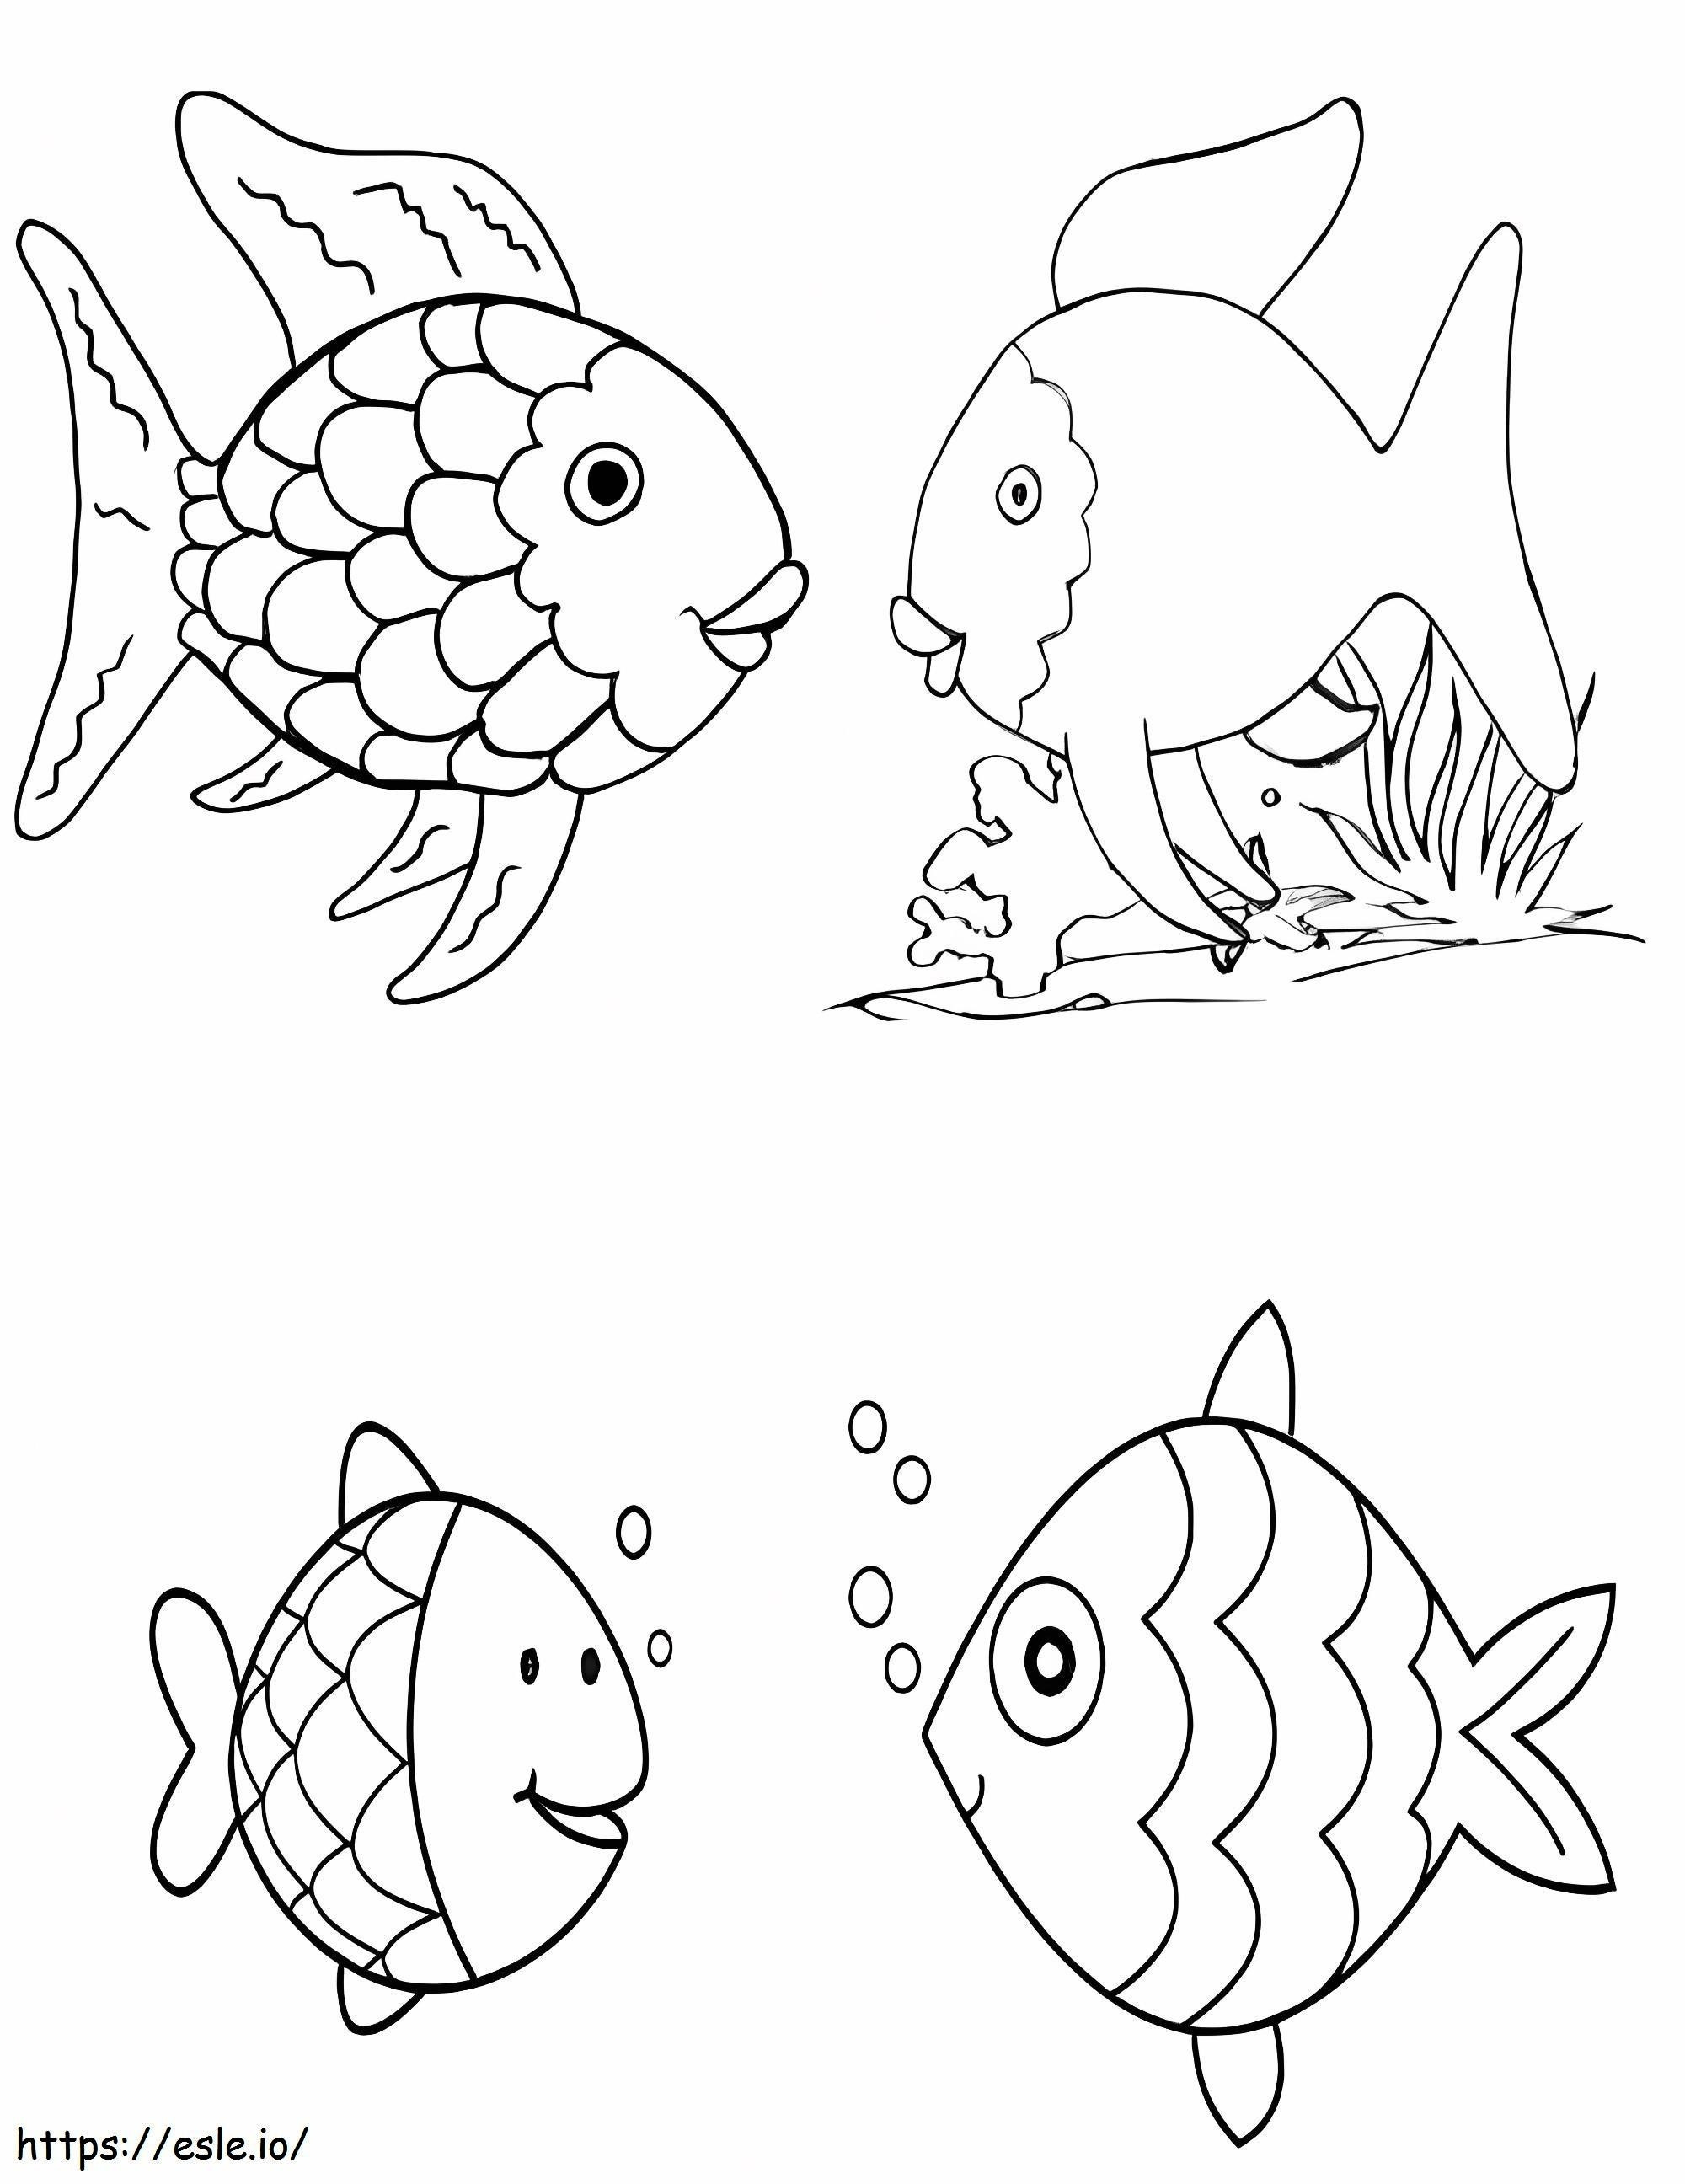 Vier Regenbogenfische ausmalbilder